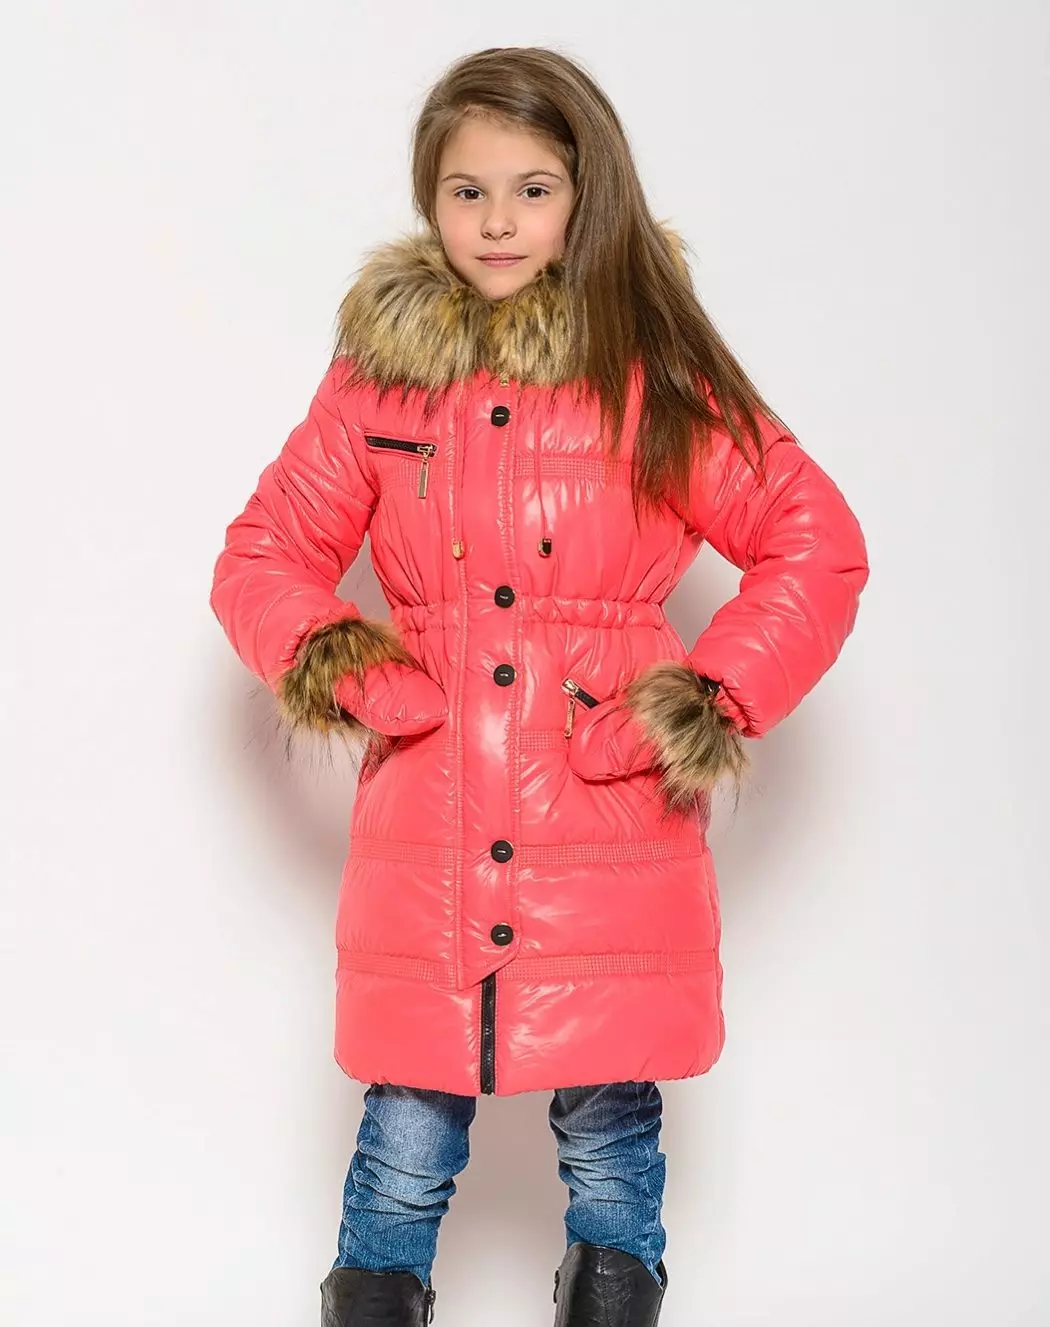 Купить куртку для девочки подростка. Пуховики для девочек зимние. Верхняя одежда для девочек. Пальто зимнее для девочек. Модные куртки для девочек.